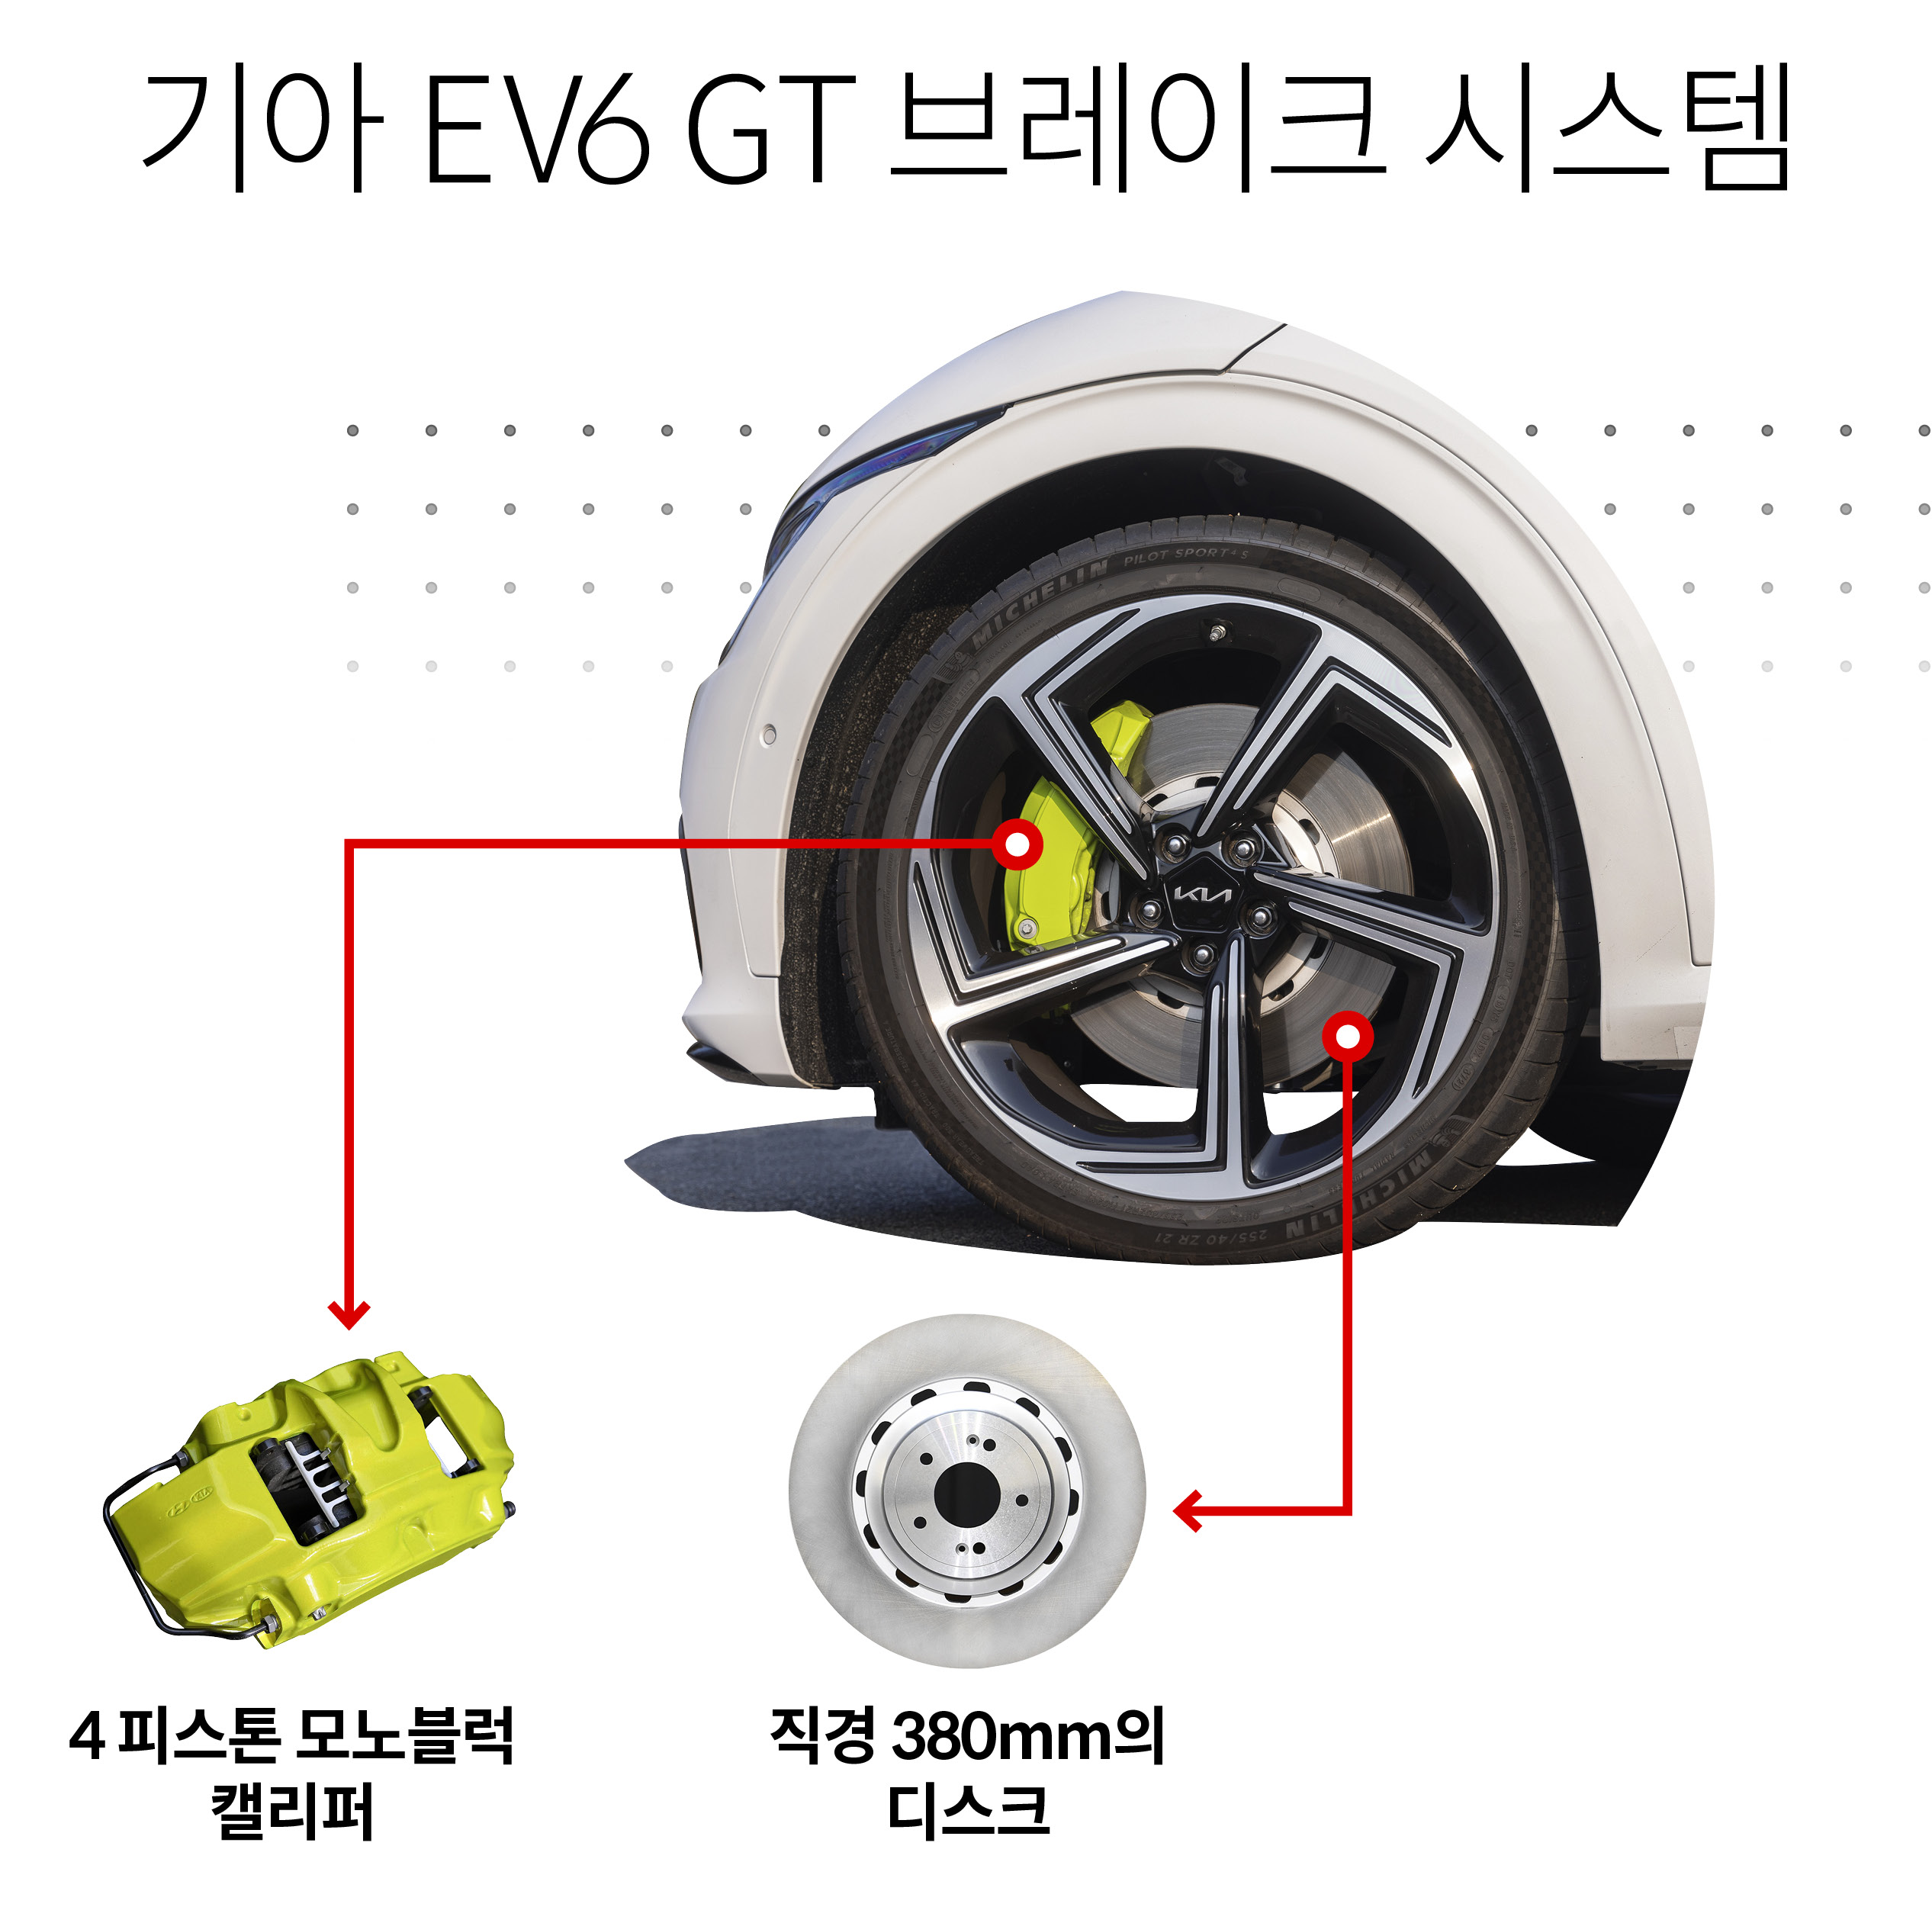 Image of brake system composition of Kia EV6 GT